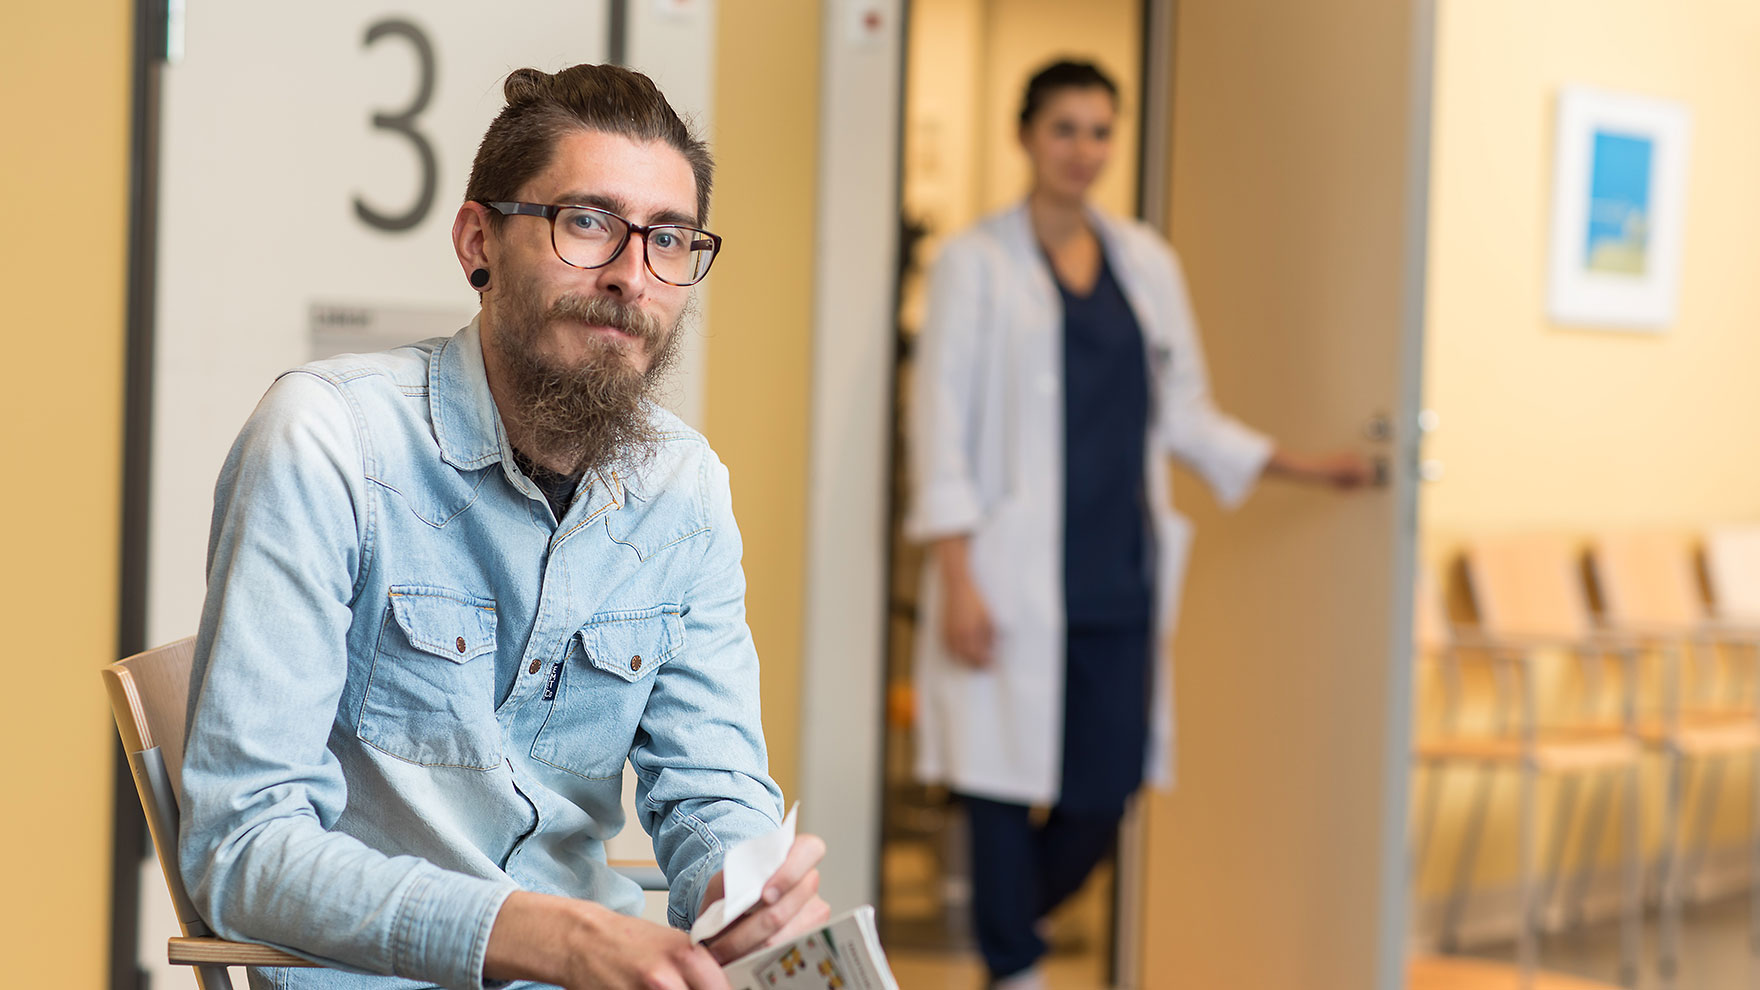 Mies istuu terveysaseman aulassa ja katsoo kohti kameraa, taustalla seisoo terveydenhuollon ammattilainen vastaanottohuoneen ovella.